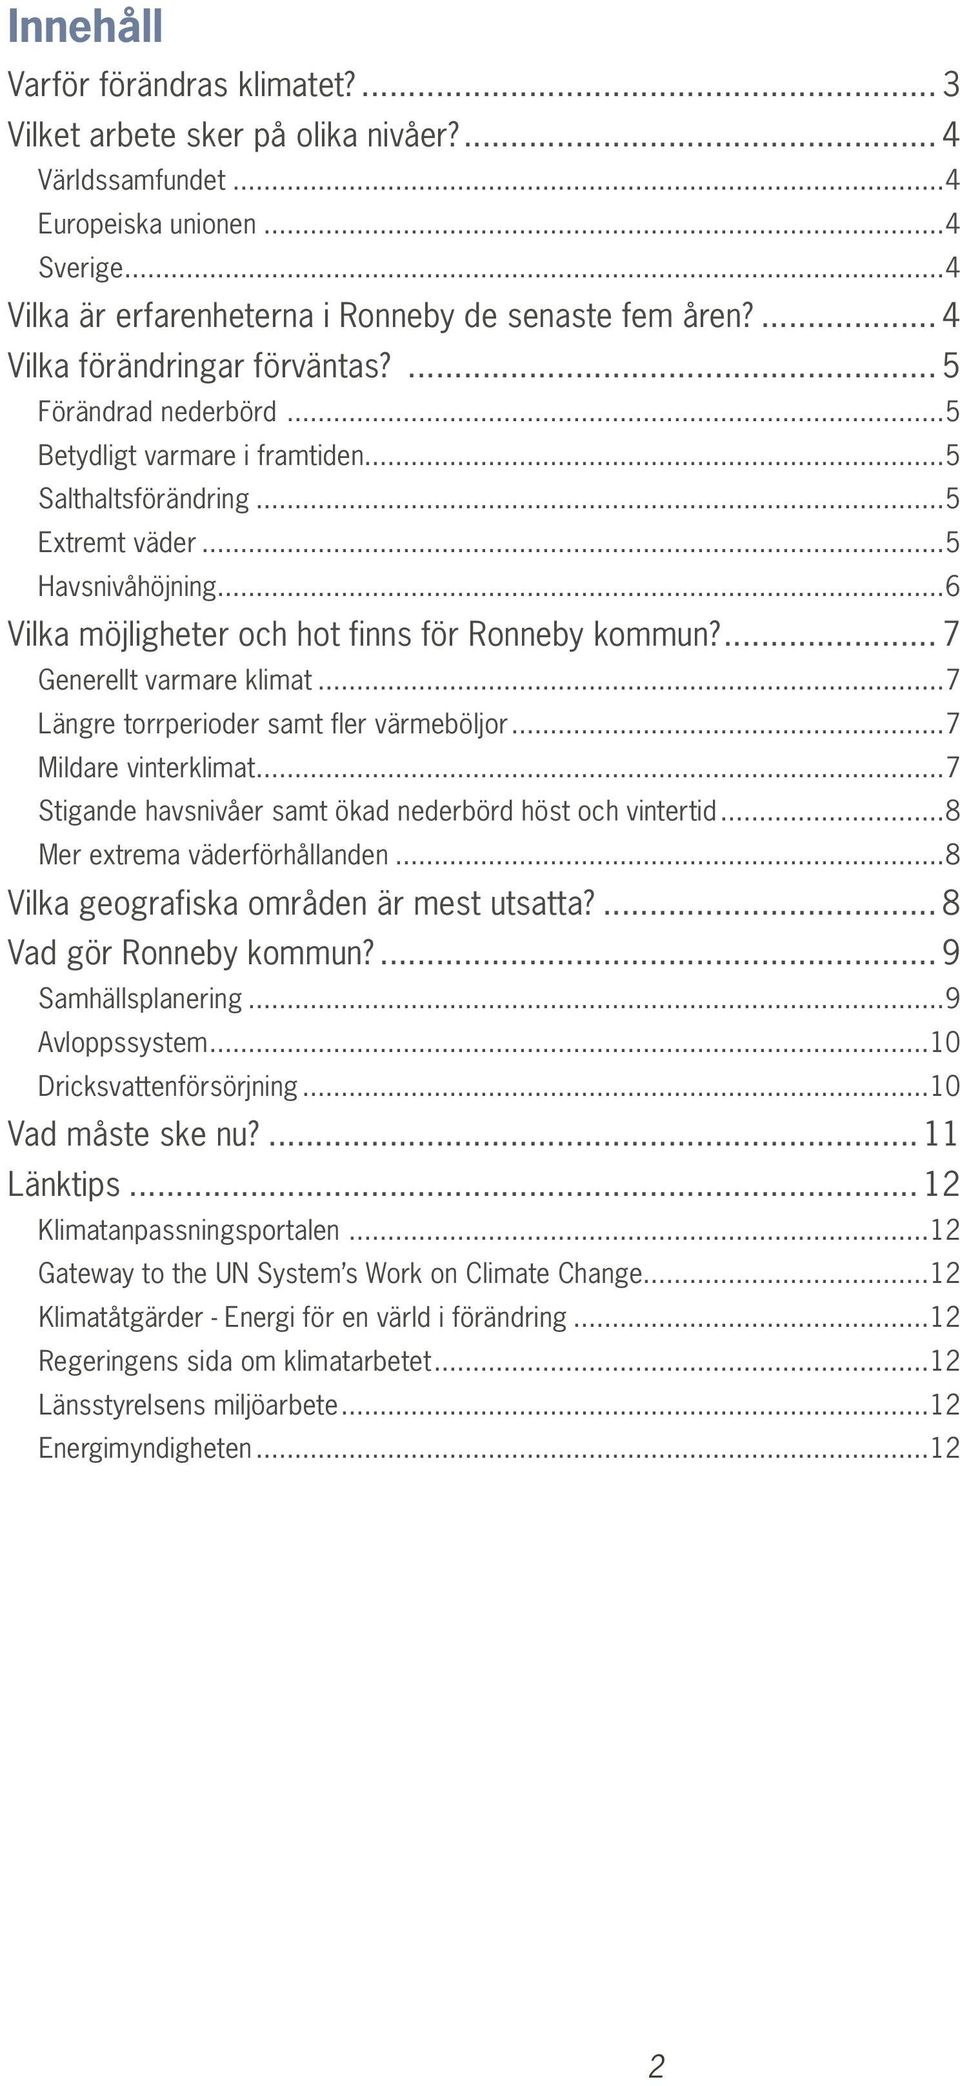 ..6 Vilka möjligheter och hot finns för Ronneby kommun?... 7 Generellt varmare klimat...7 Längre torrperioder samt fler värmeböljor...7 Mildare vinterklimat.